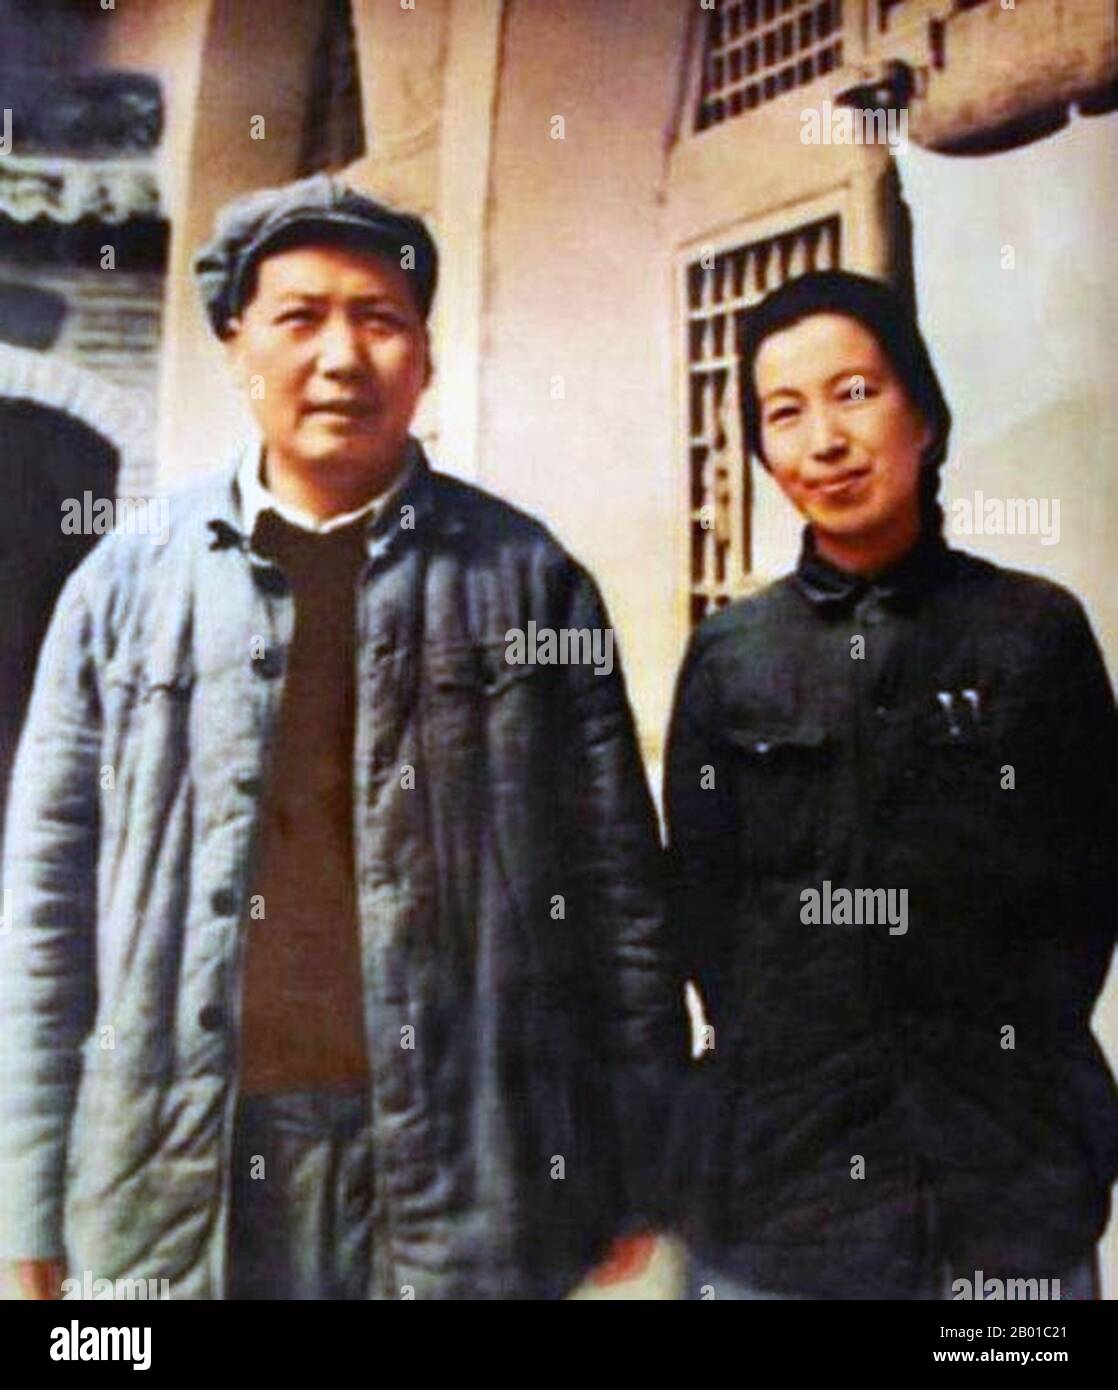 Cina: Mao Zedong (26 dicembre 1893 - 9 settembre 1976) con la sua quarta moglie, Jiang Qing (19 marzo 1914 - 14 maggio 1991), spesso chiamata 'Madame Mao', nel 1946. Jiang Qing (Chiang CH'ing) era lo pseudonimo utilizzato dall'ultima moglie del leader cinese Mao Zedong e dal maggiore esponente del partito comunista cinese. Durante la sua carriera recitatrice, ha seguito il nome di scena LAN Ping, ed è stata conosciuta da vari altri nomi durante la sua vita. Sposò Mao a Yan'an nel novembre del 1938, e a volte è chiamata Madame Mao nella letteratura occidentale, che serviva come prima signora della Cina comunista. Foto Stock